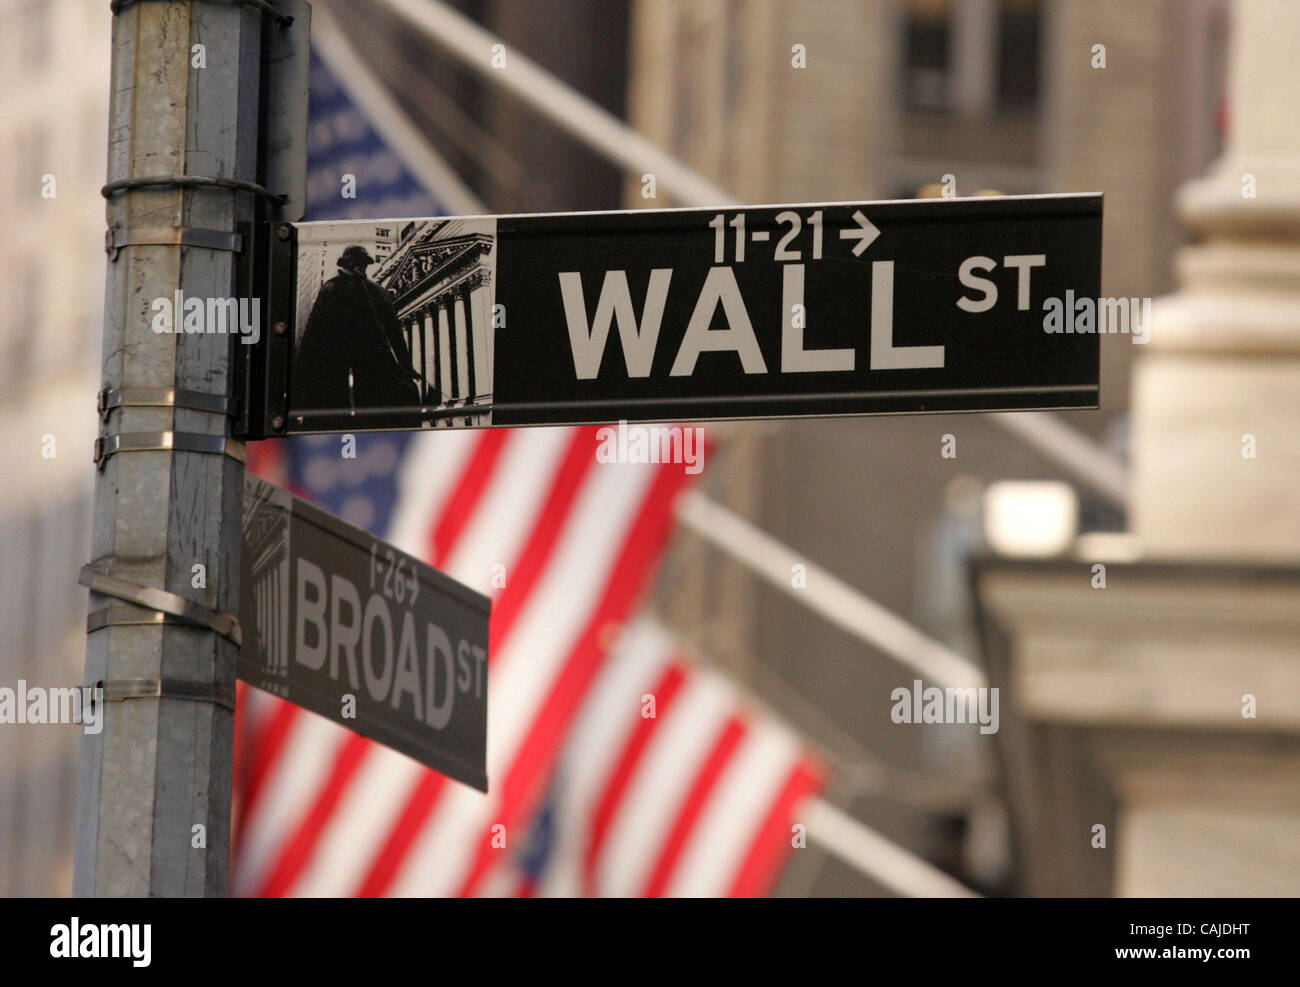 23. Januar 2008 - New York, NY, USA - ein Blick auf die Wall Street melden. Angst vor Rezession, hohe Ölpreise, Hypothek und Kreditkrise führten zu erhöhte trading Volatilität sowohl in den Vereinigten Staaten und internationalen Märkten.  (Bild Kredit: Stockfoto